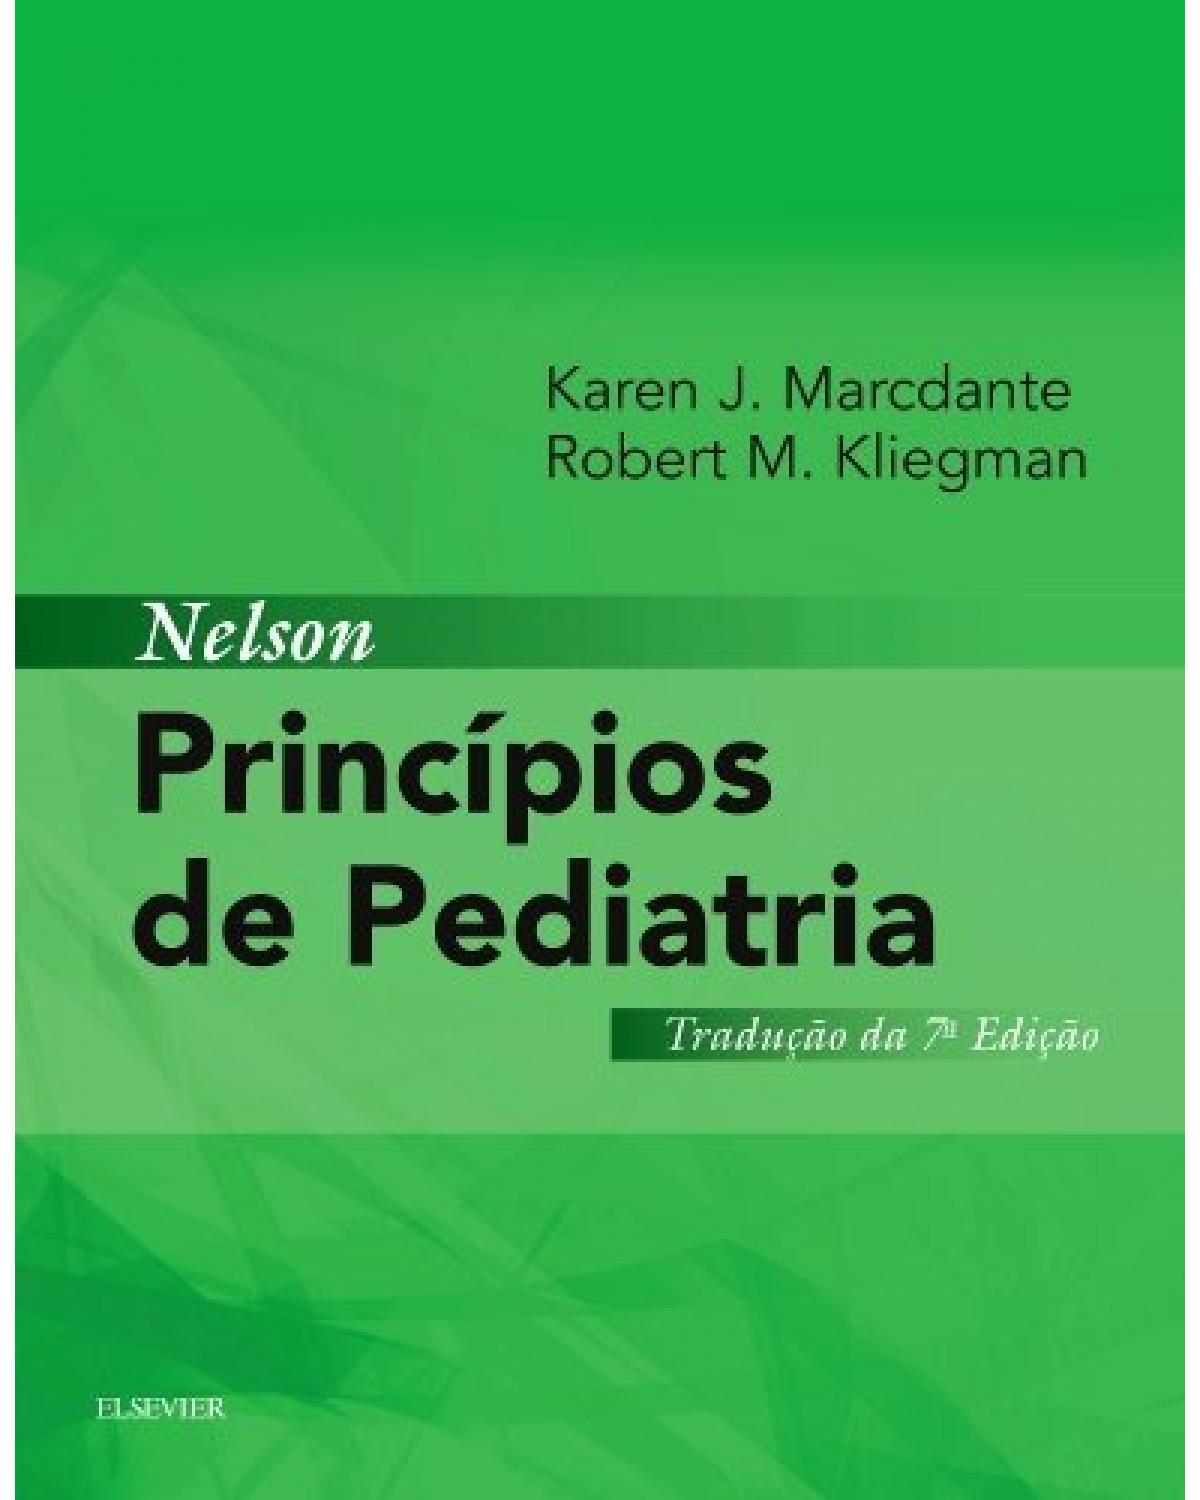 Nelson - Princípios de pediatria - 7ª Edição | 2016